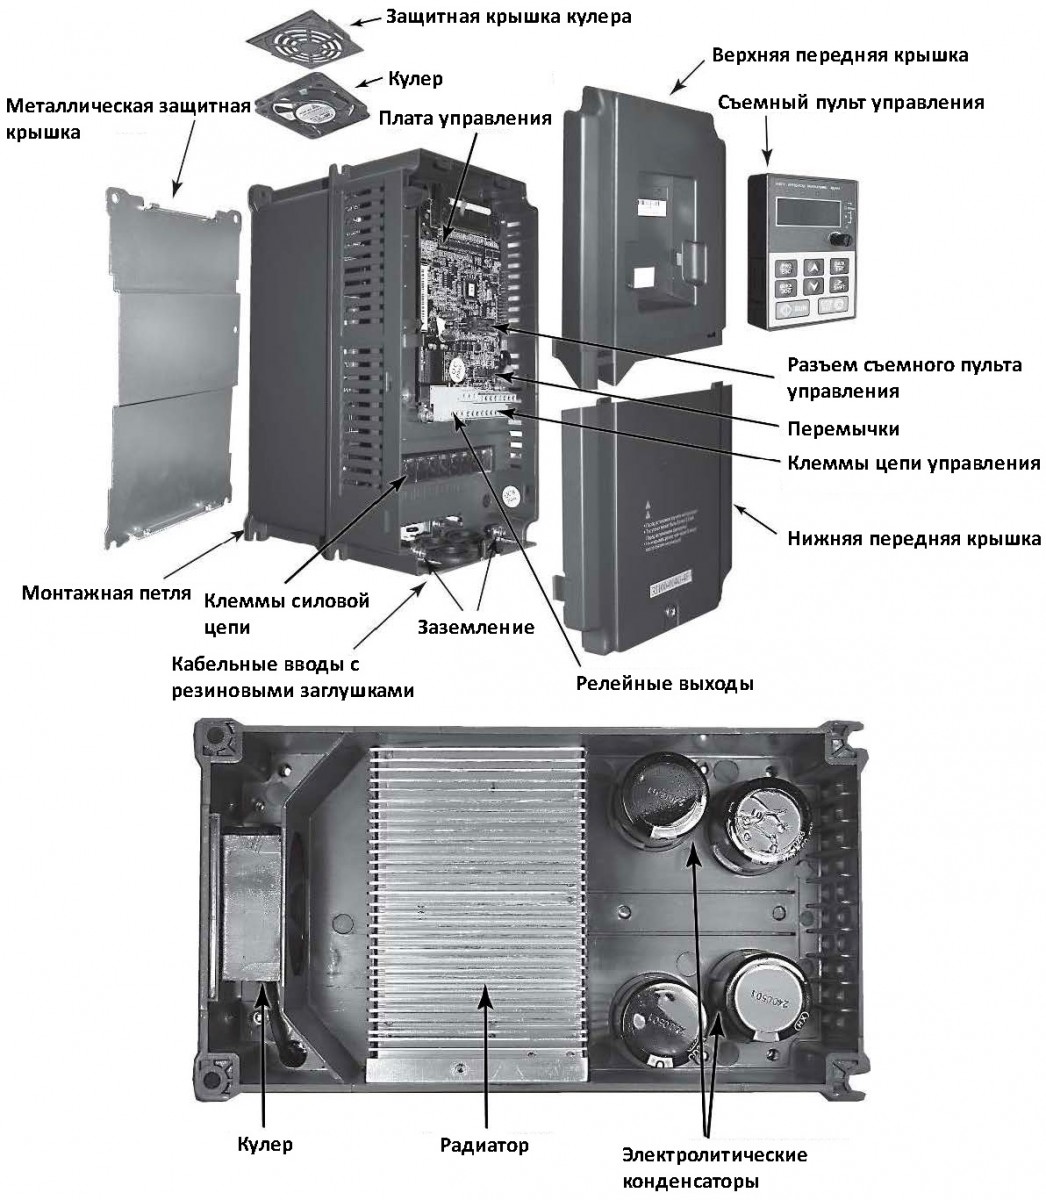 Частотные преобразователи - серия GD100-01